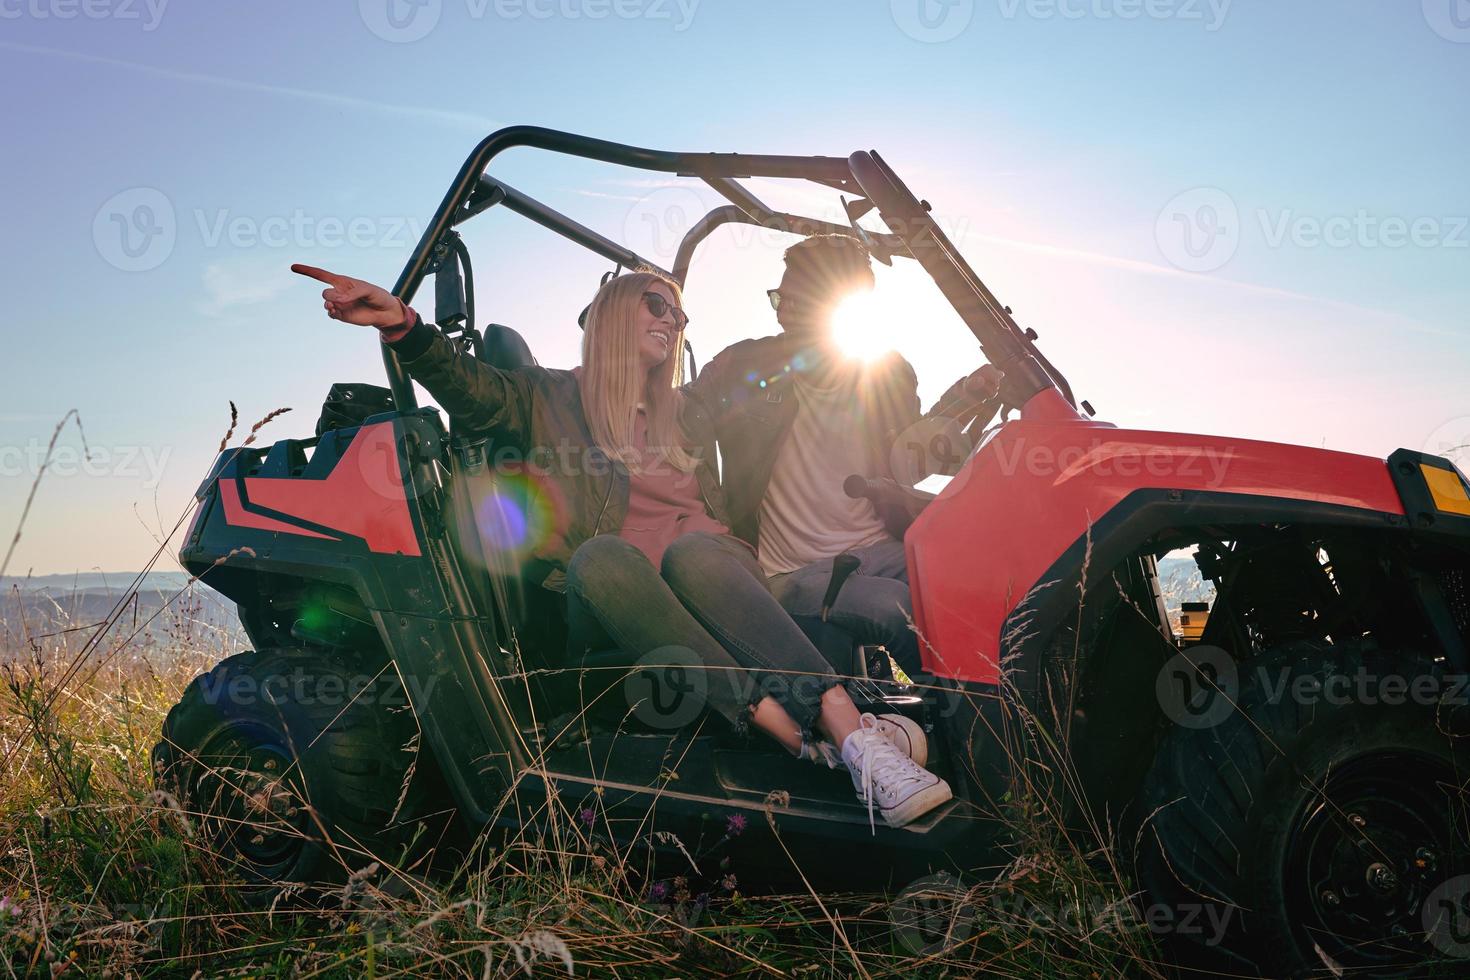 casal aproveitando o lindo dia de sol enquanto dirigia um buggy off road foto